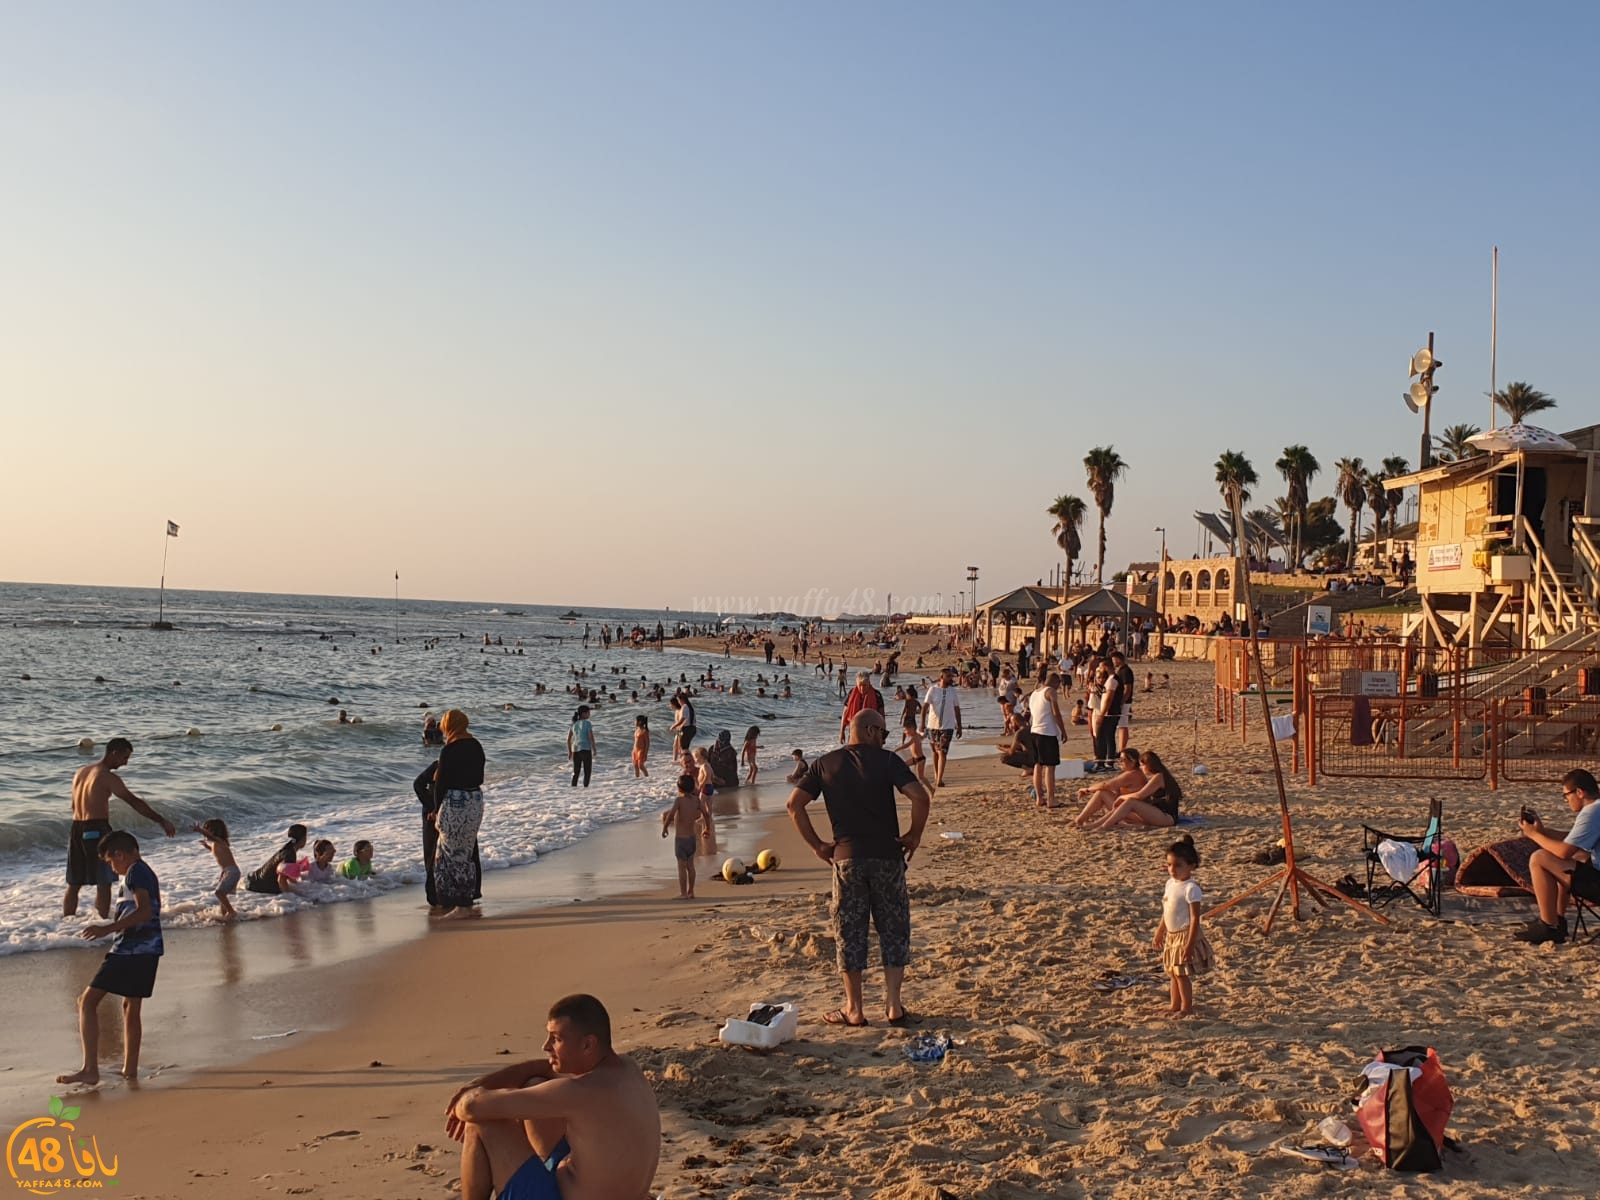  اكتظاظ كبير تشهده شواطئ مدينة يافا ودعوات للالتزام بتعليمات السلامة